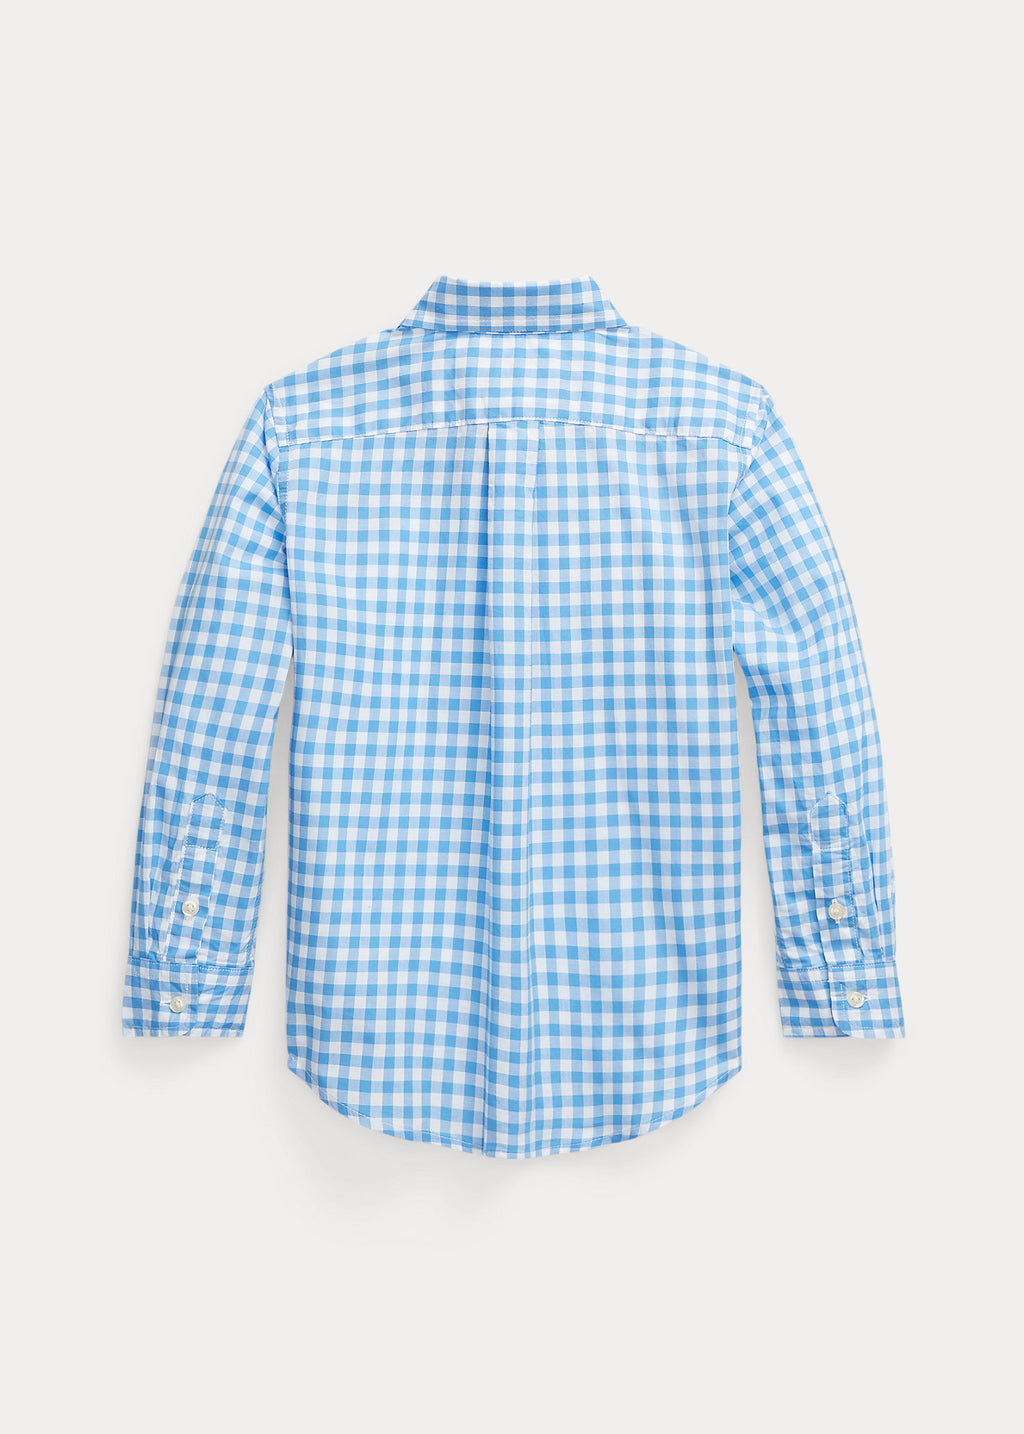 Ralph Lauren Shirt Gingham Cotton Poplin Shirt